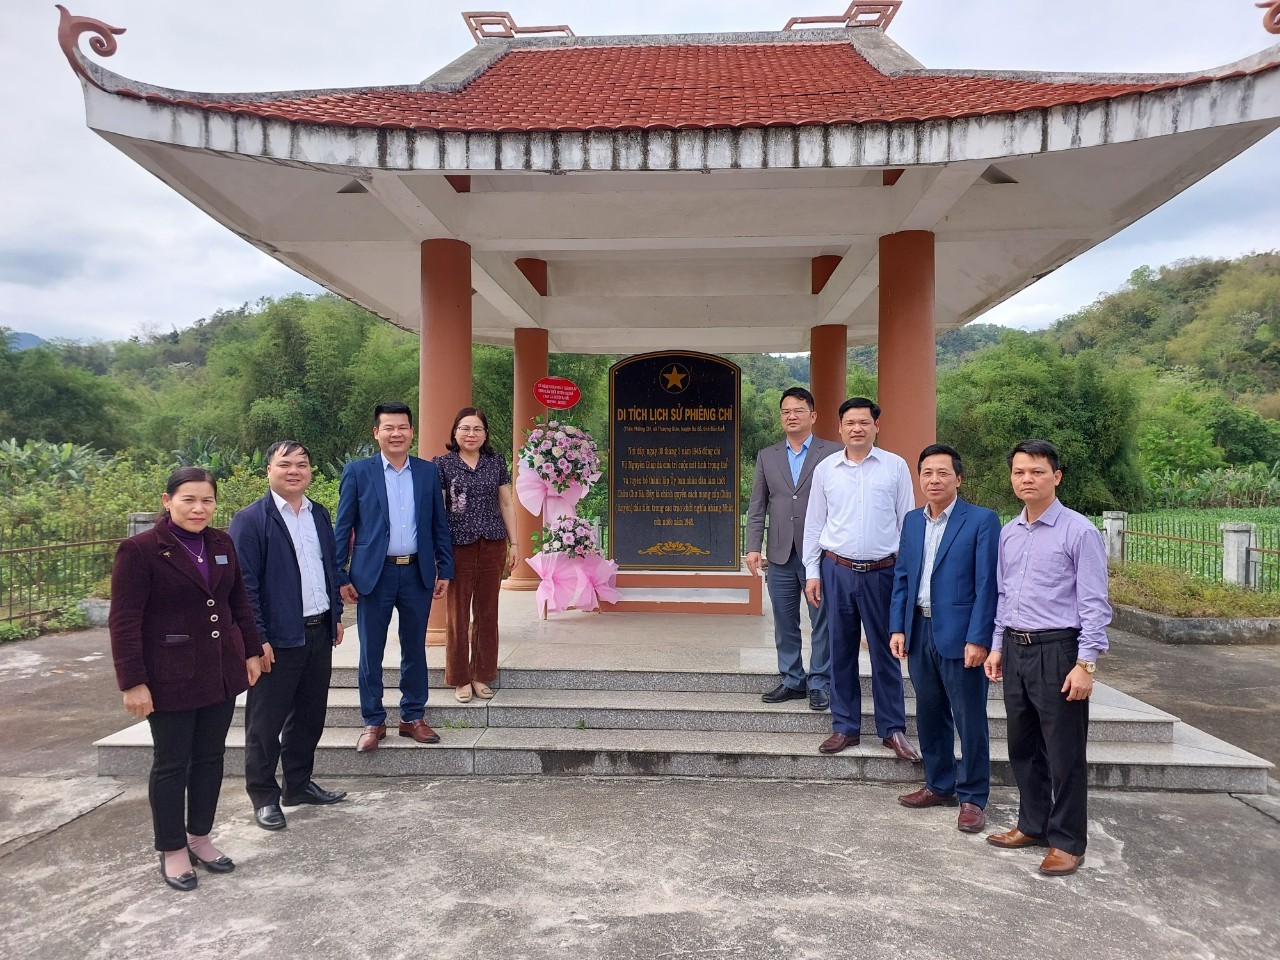 Huyện Ba Bể dâng hoa tại Di tích lịch sử Phiêng Chì